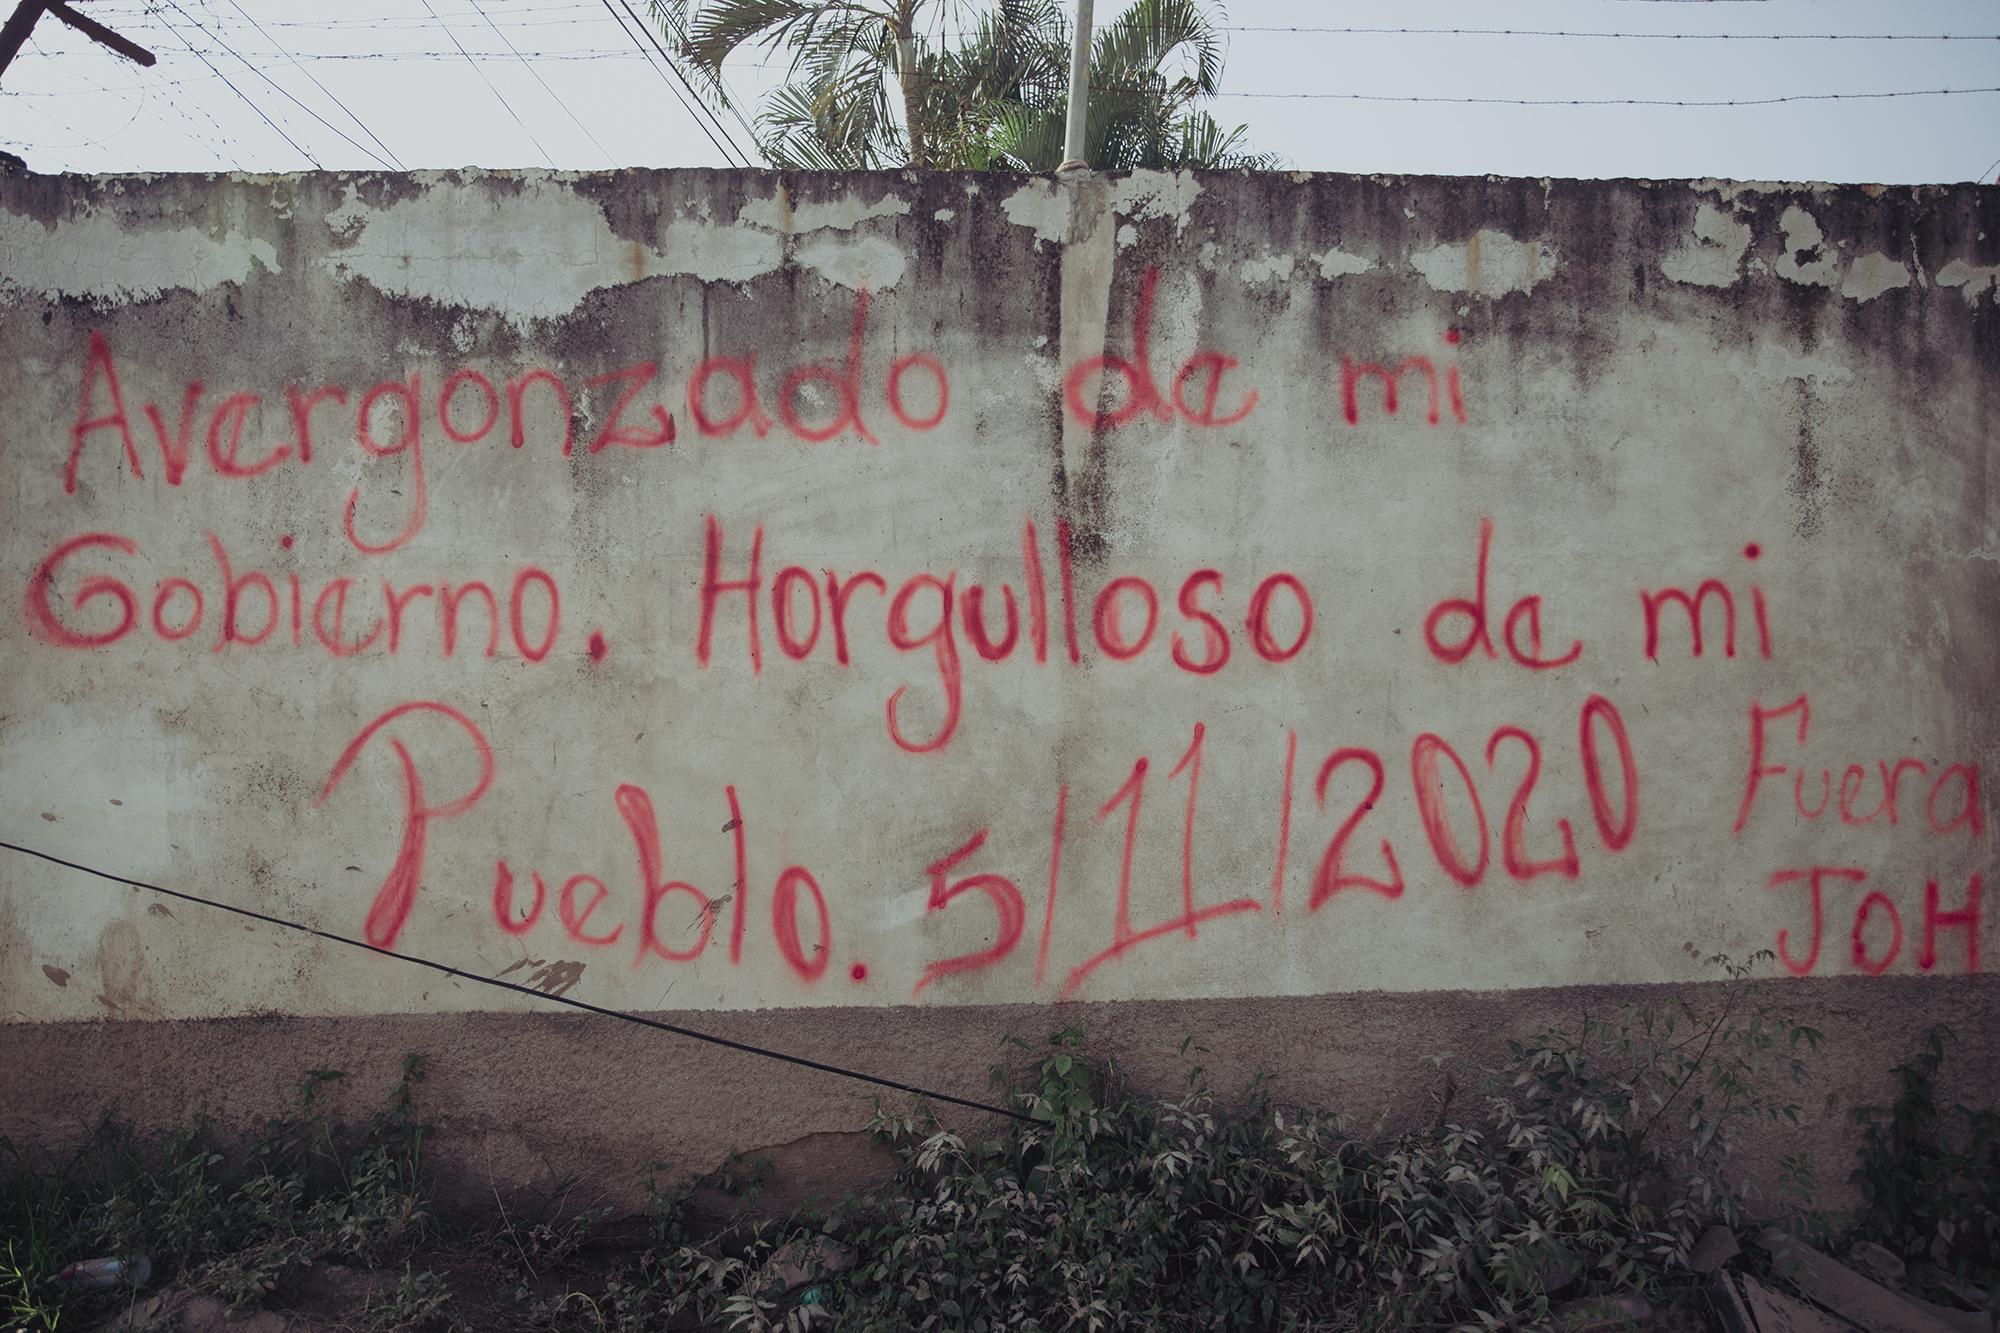 Mensaje pintado en una pared de la Rivera Hernández. Como indica la el mensaje, fue escrito el 5 de noviembre, justo durante la tormenta. Los que quedaron en el lugar lamentan no haber recibido la atención necesaria por parte del Estado.